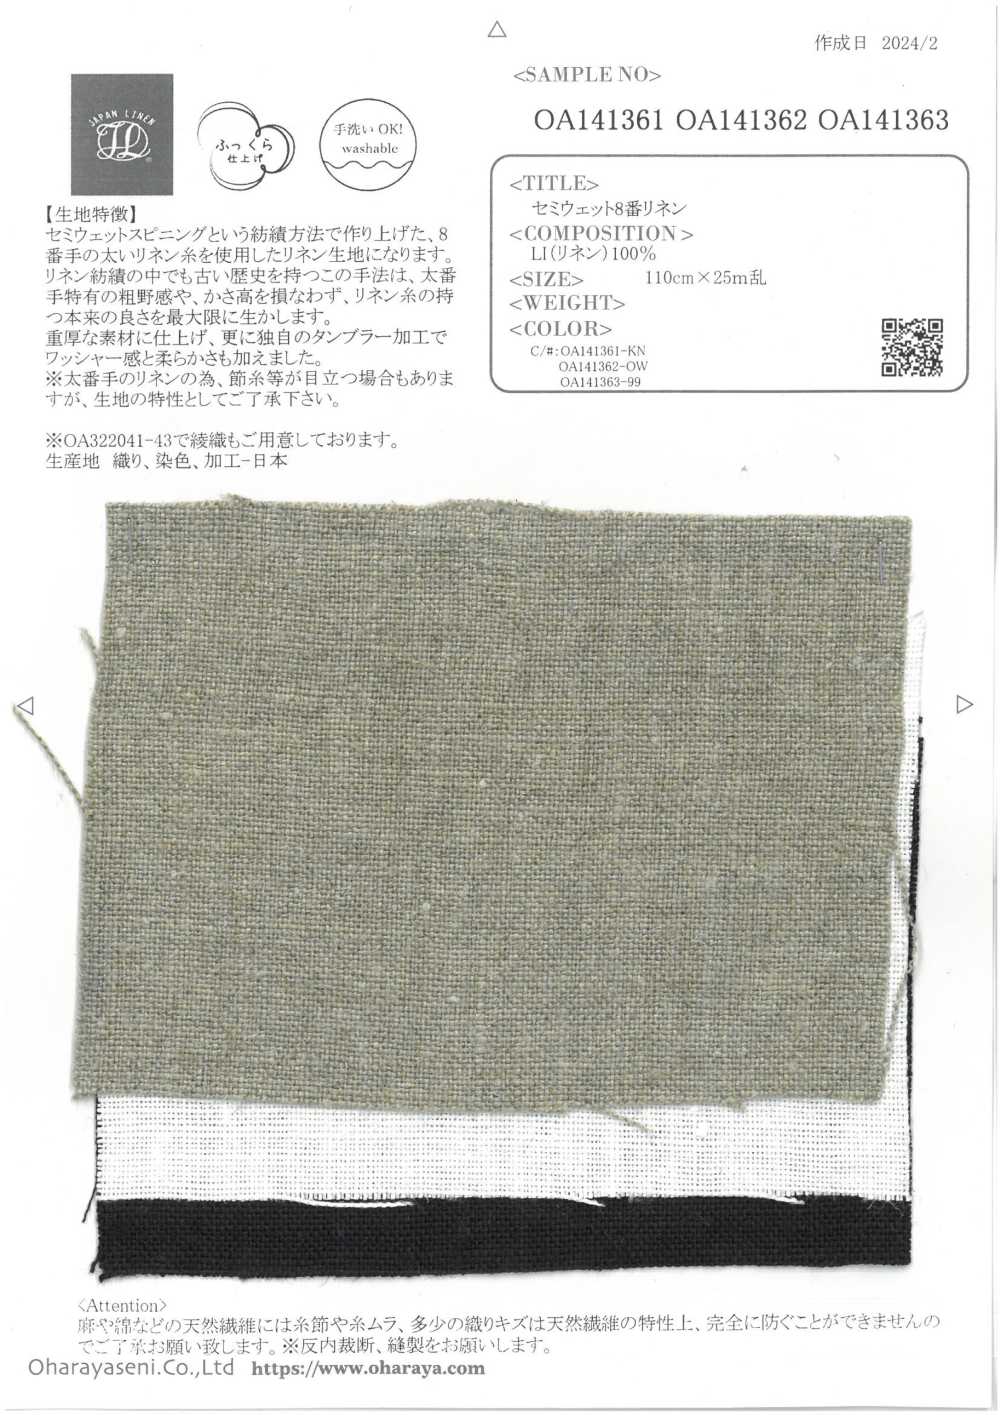 OA141362 Linho Semi-úmido Nº 8[Têxtil / Tecido] Oharayaseni